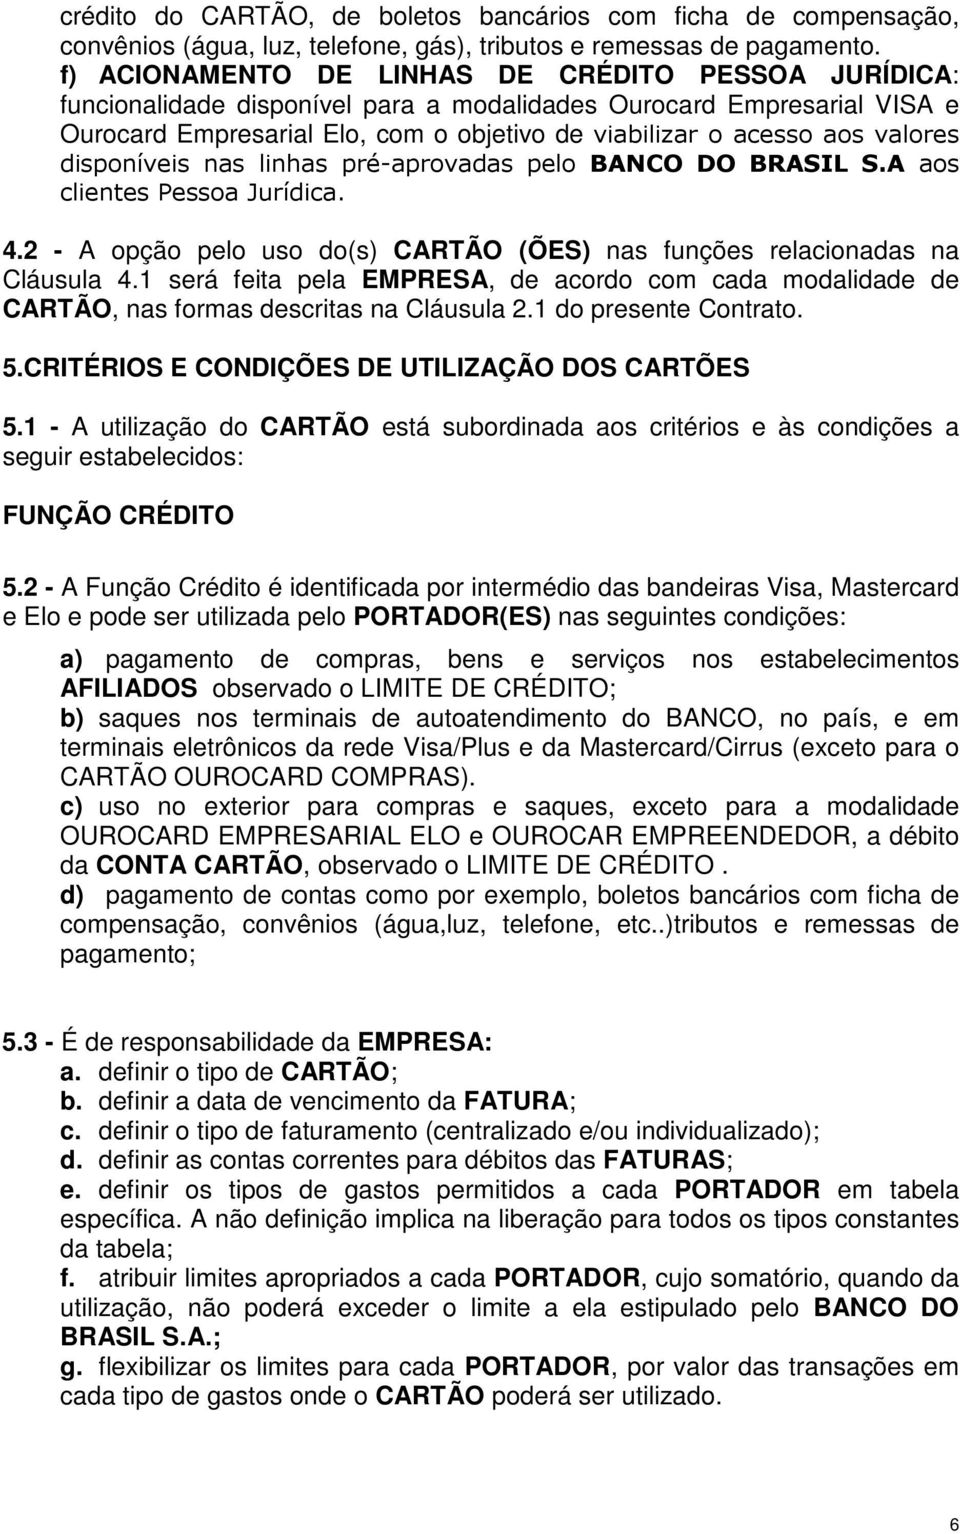 valores disponíveis nas linhas pré-aprovadas pelo BANCO DO BRASIL S.A aos clientes Pessoa Jurídica. 4.2 - A opção pelo uso do(s) CARTÃO (ÕES) nas funções relacionadas na Cláusula 4.